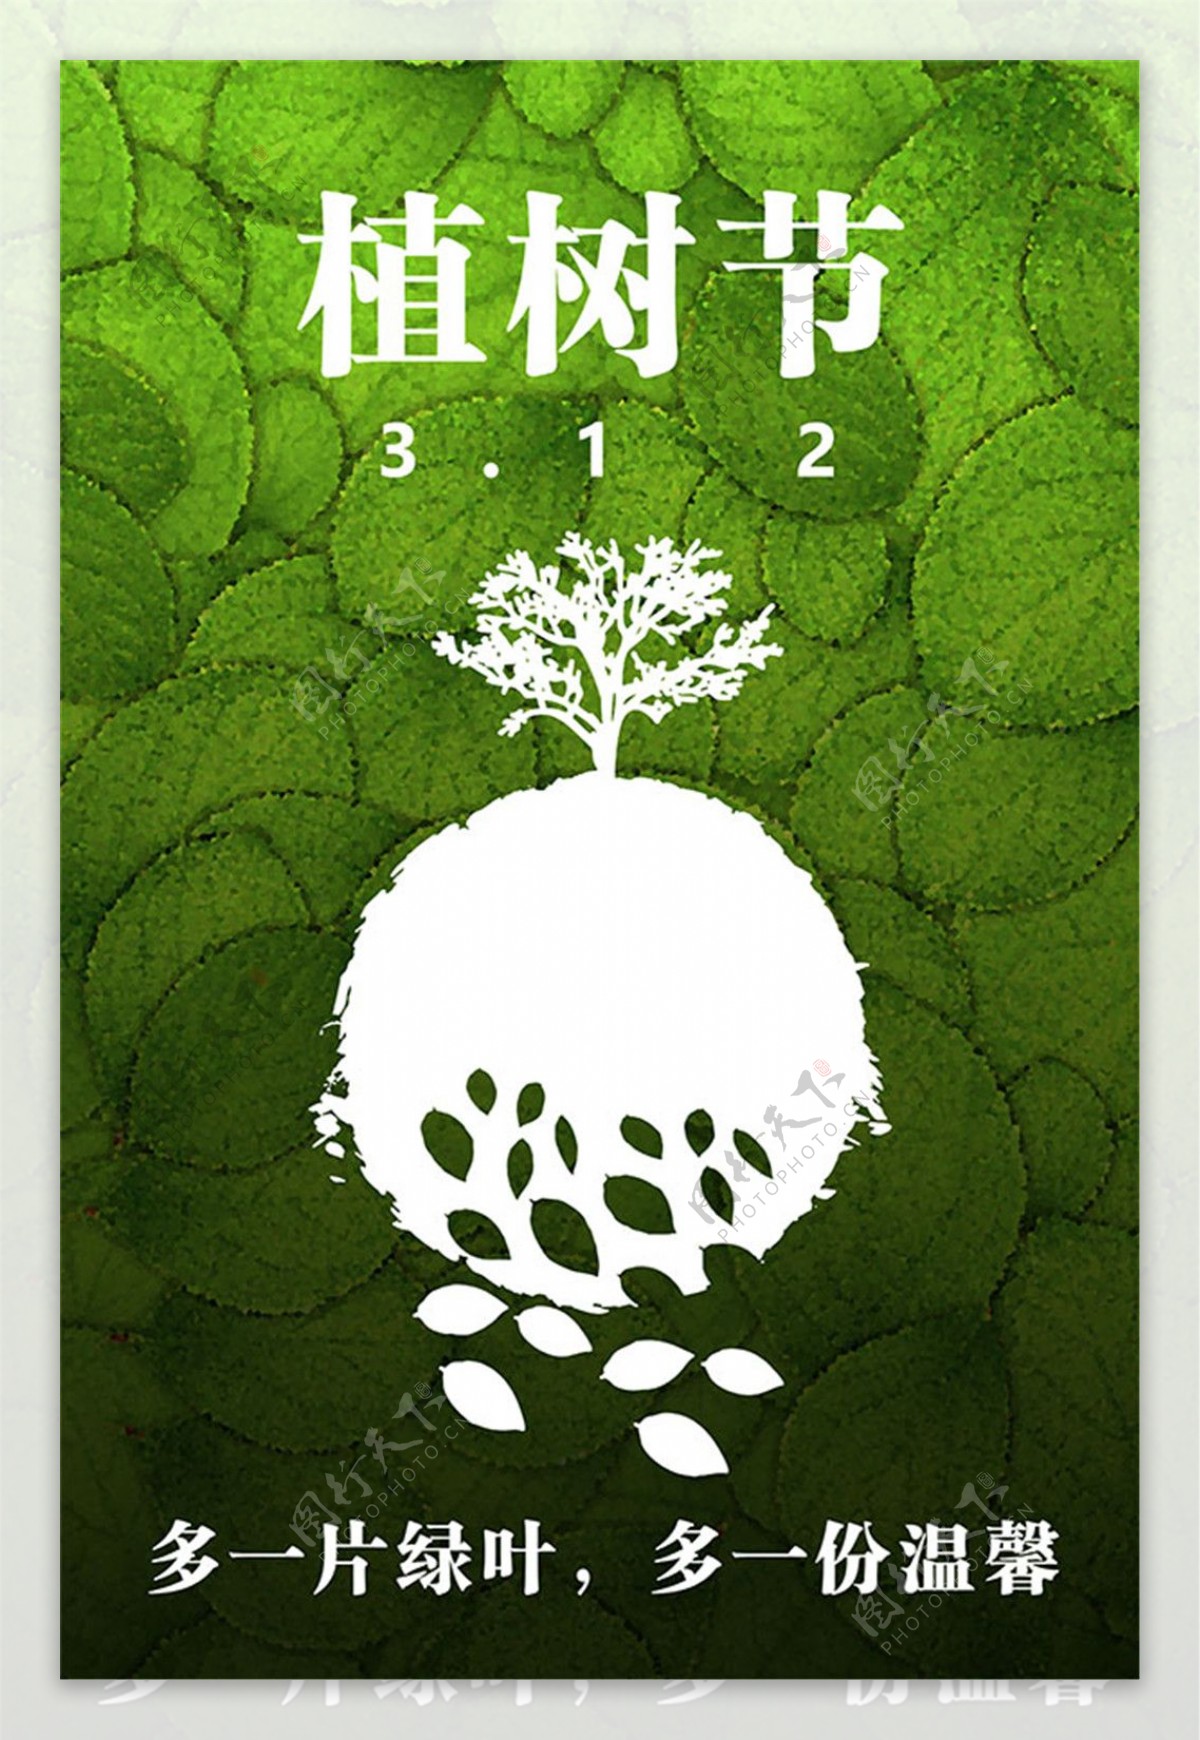 312植树节海报